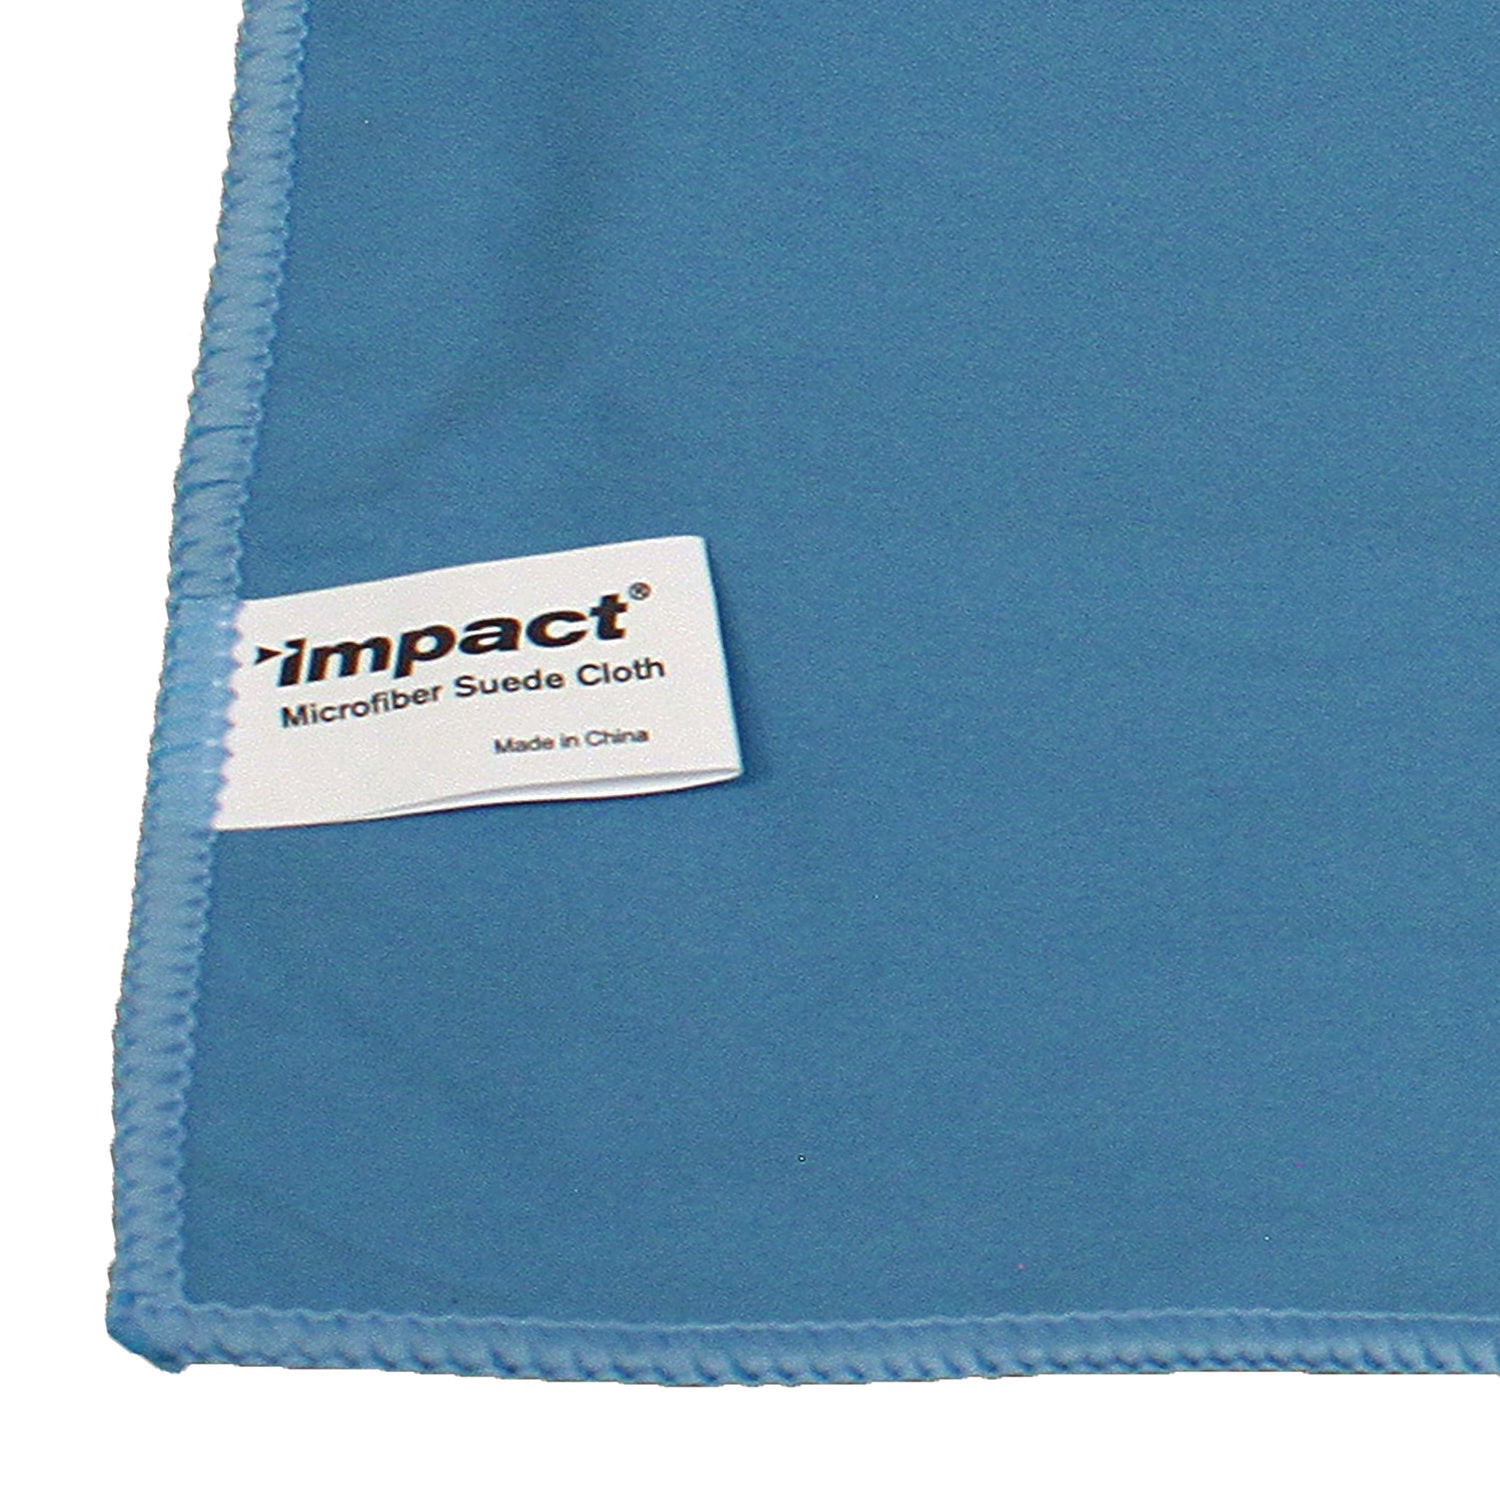 lightweight-microfiber-cloths-16-x-16-blue-12-pack-18-packs-carton_implfk100 - 3